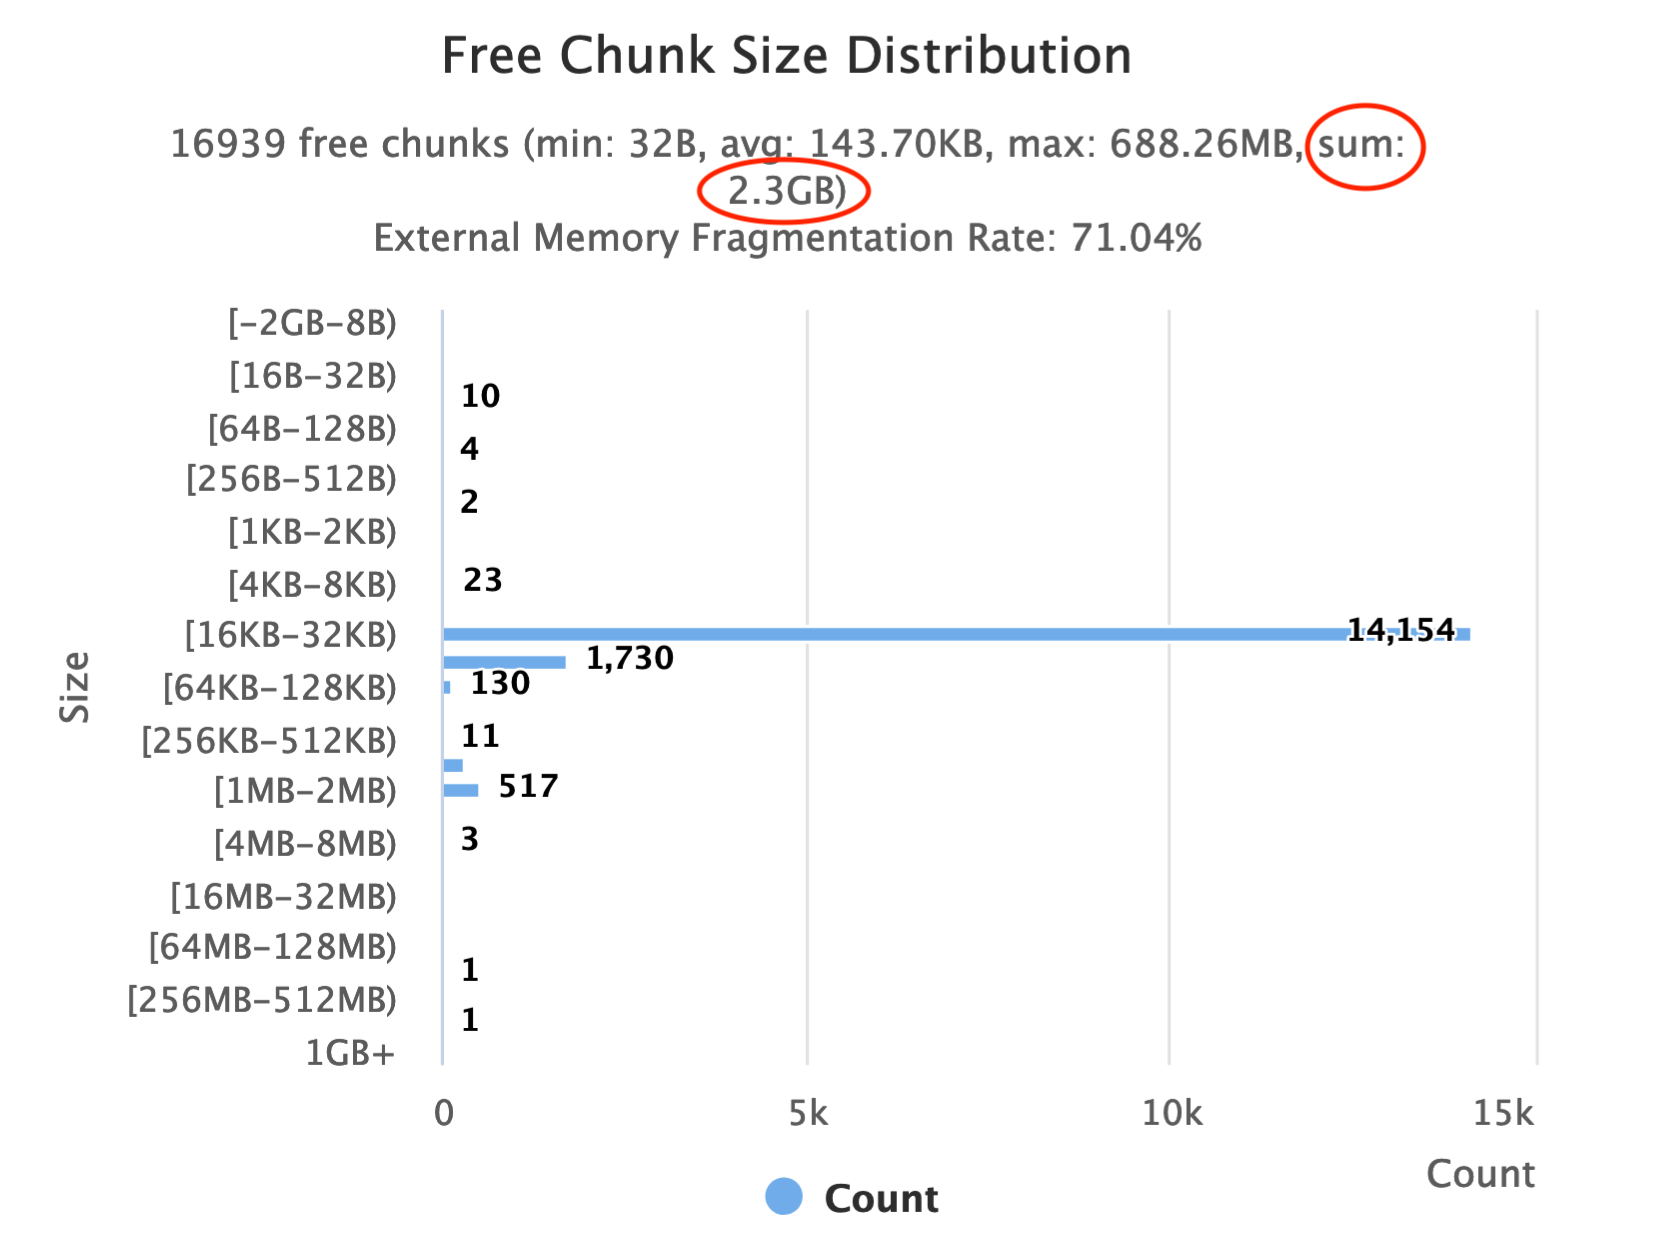 Glibc Free Chunk Size Distribution